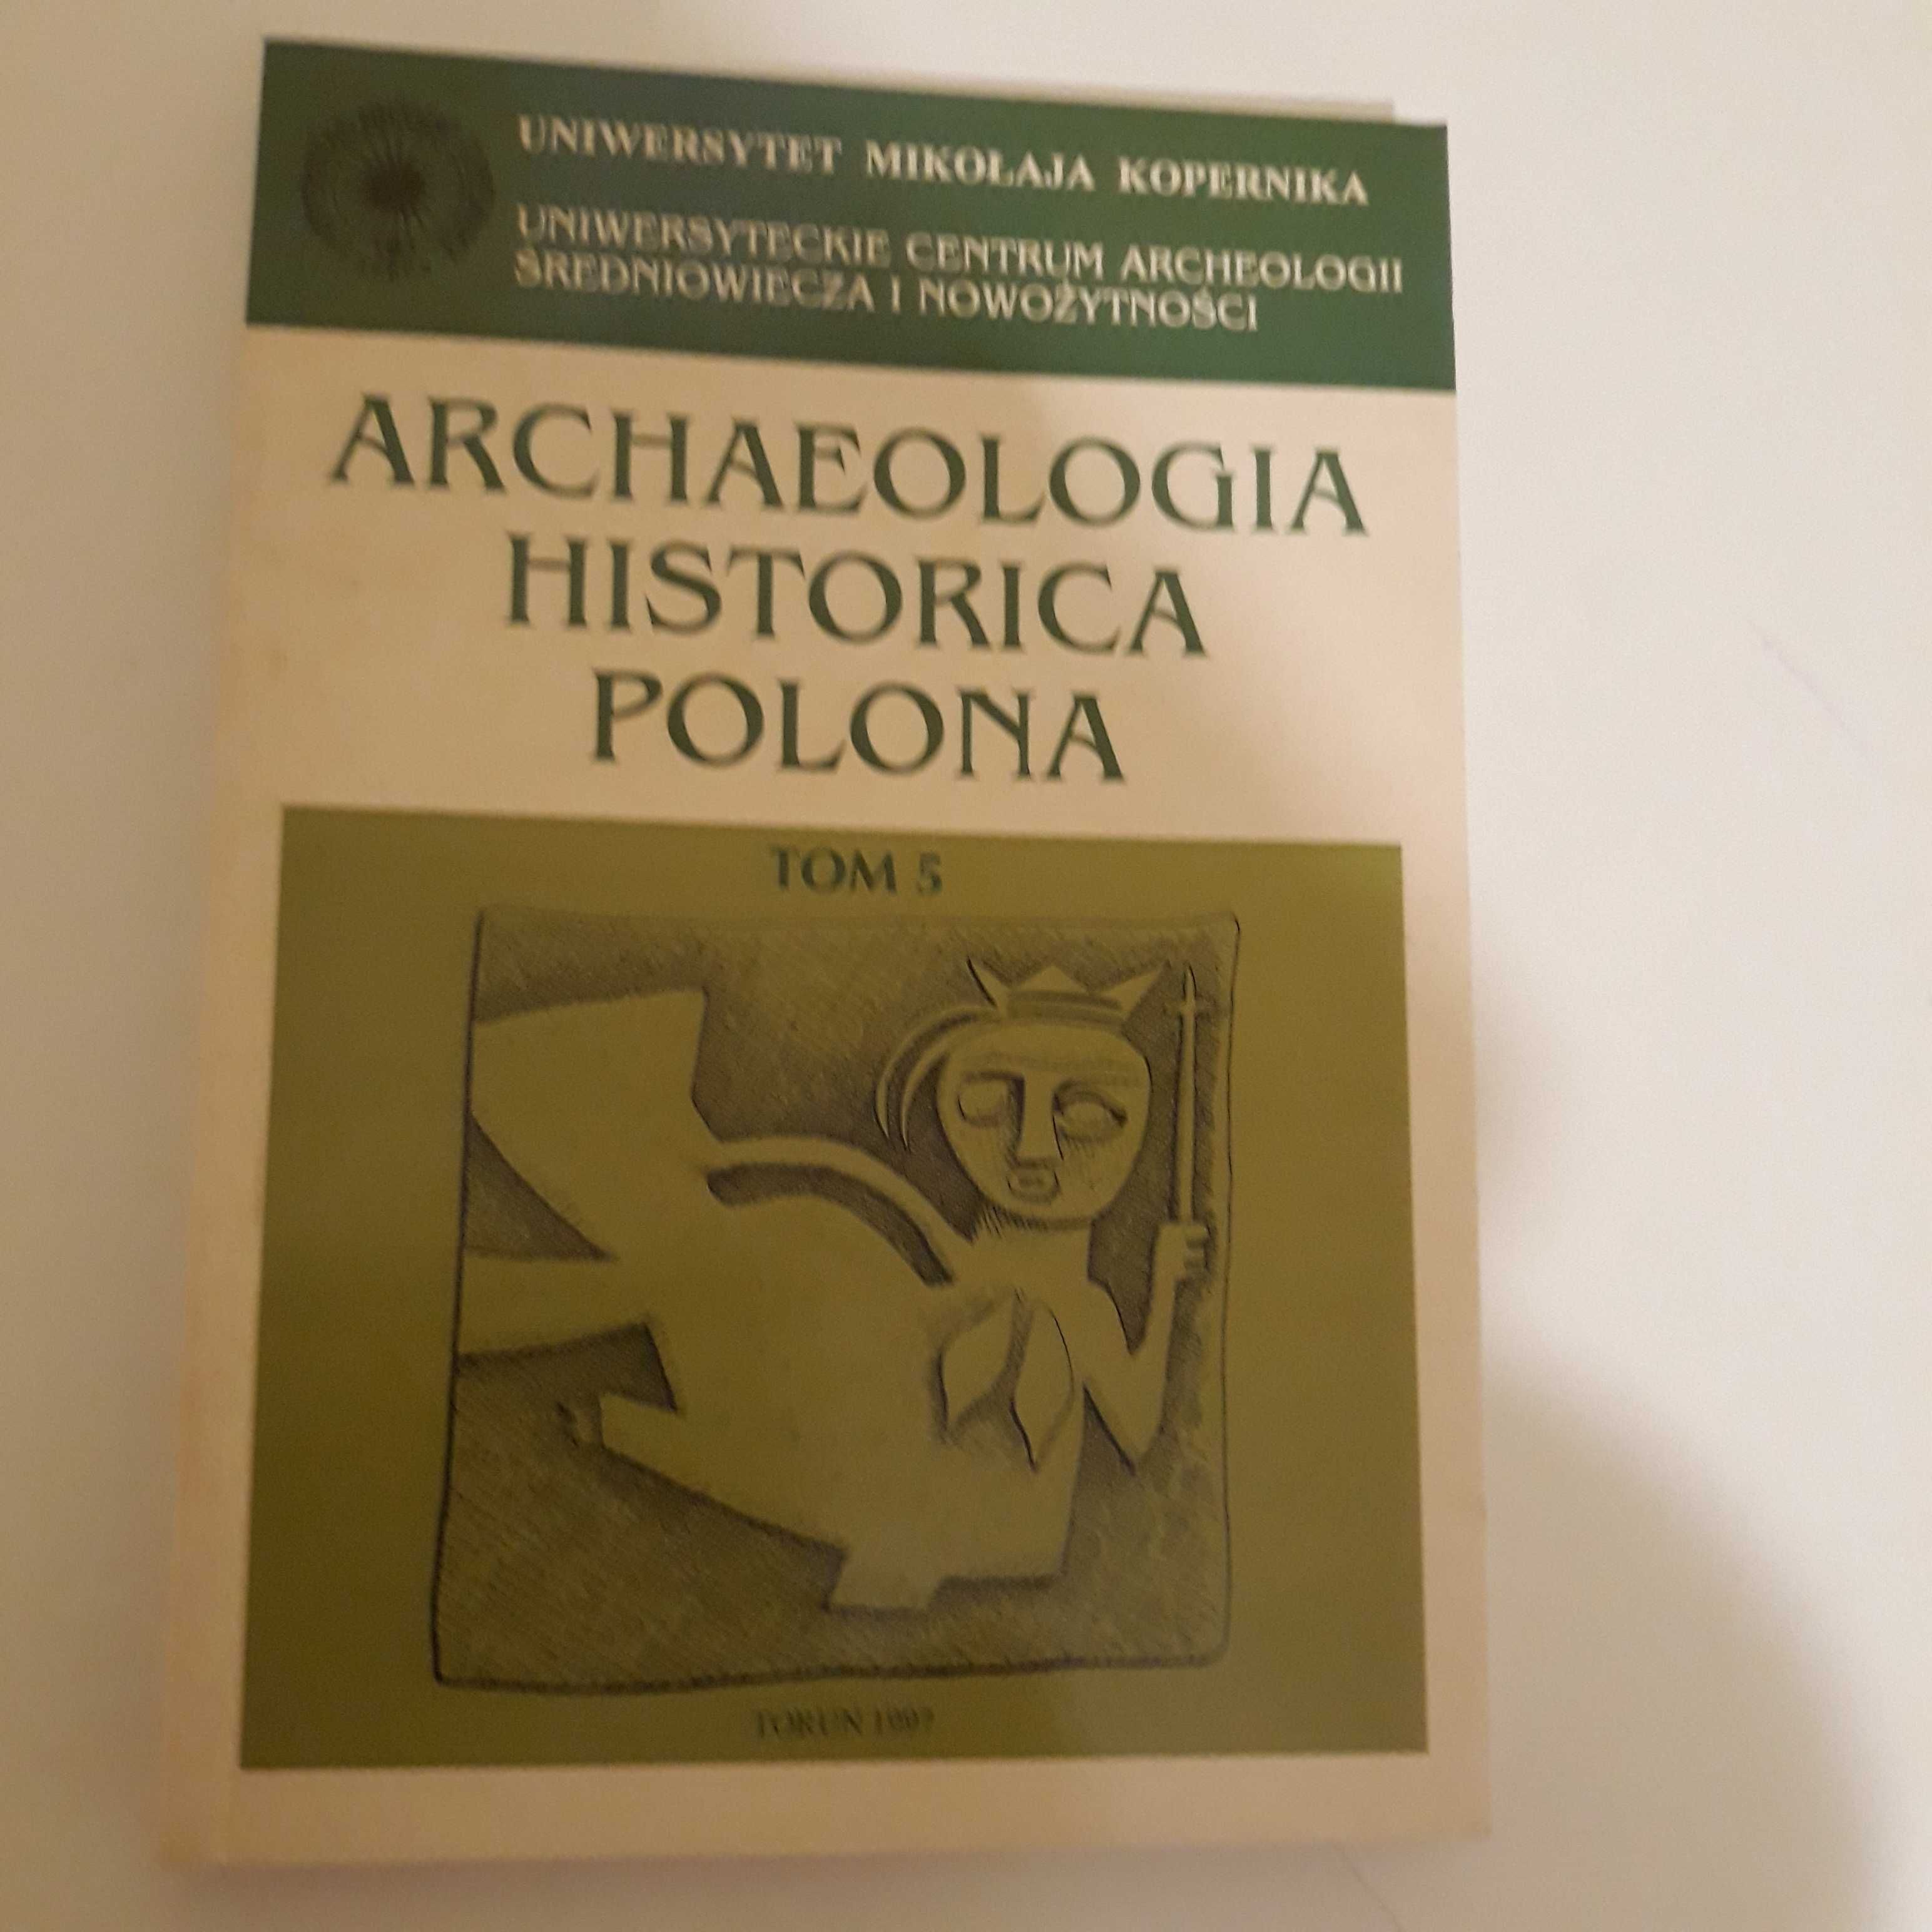 Archaeologia Historica Polona tom 5 - Jerzy Kruppe - KSIĄŻKA - NOWA